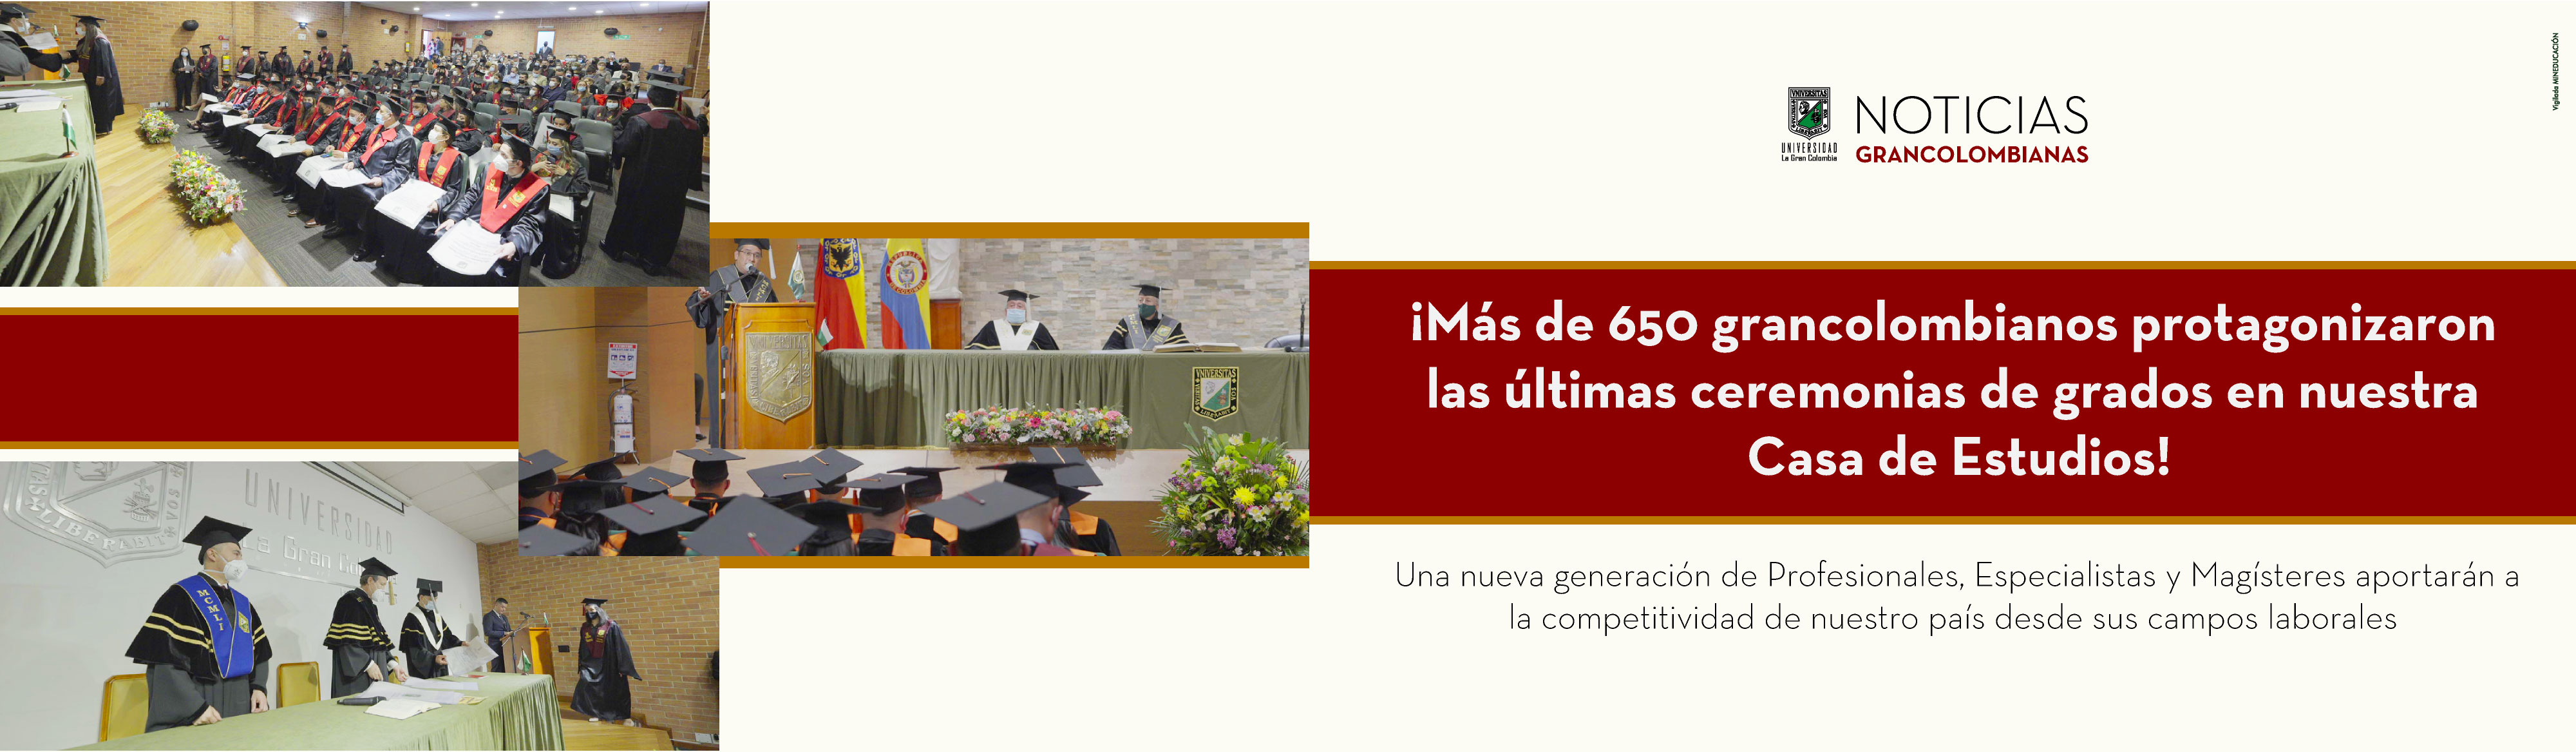 ¡Más de 650 grancolombianos protagonizaron las últimas ceremonias de grados en nuestra Casa de Estudios!